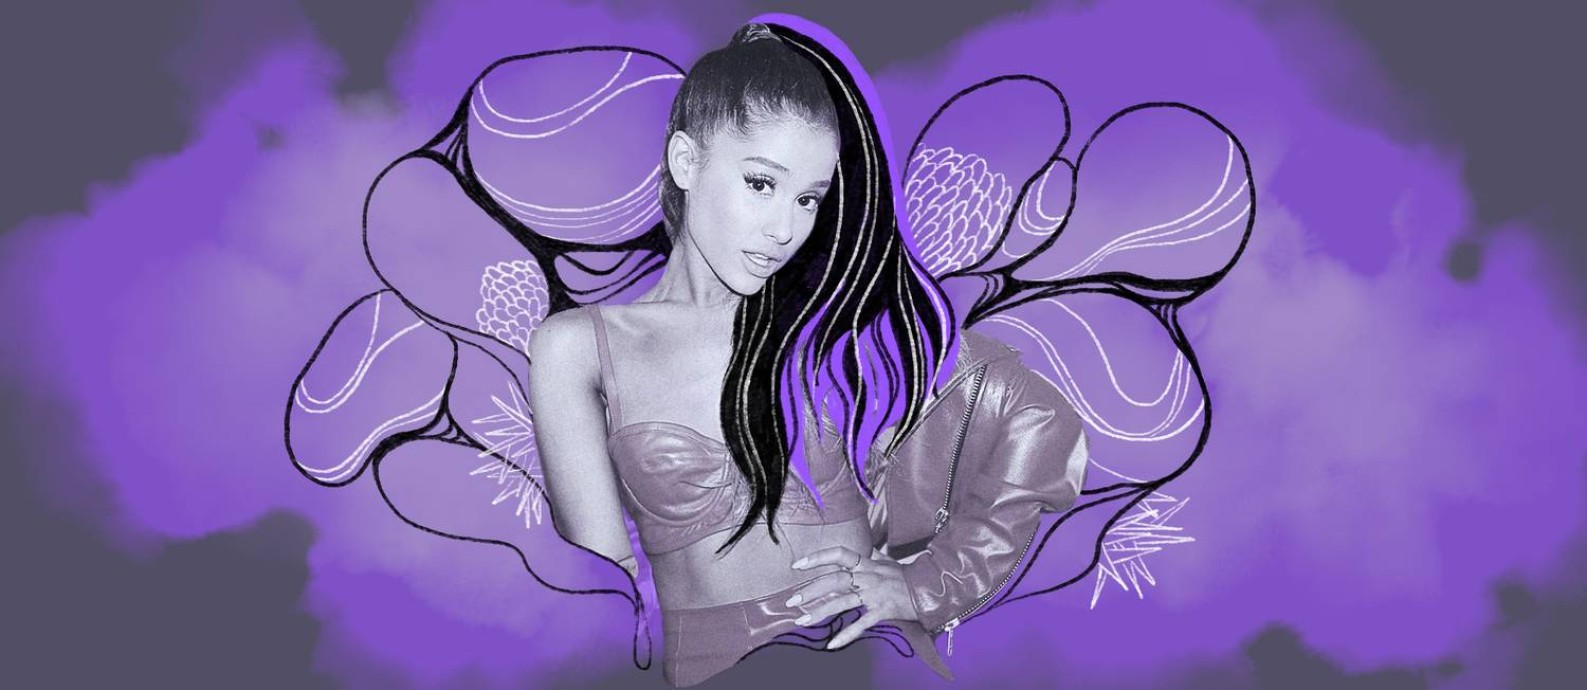 A cantora norte-americana Ariana Grande sugeriu ser bissexual na música "Monopoly", lançada no último 1º de abril Foto: Ilustração de Lari Arantes sobre foto de divulgação